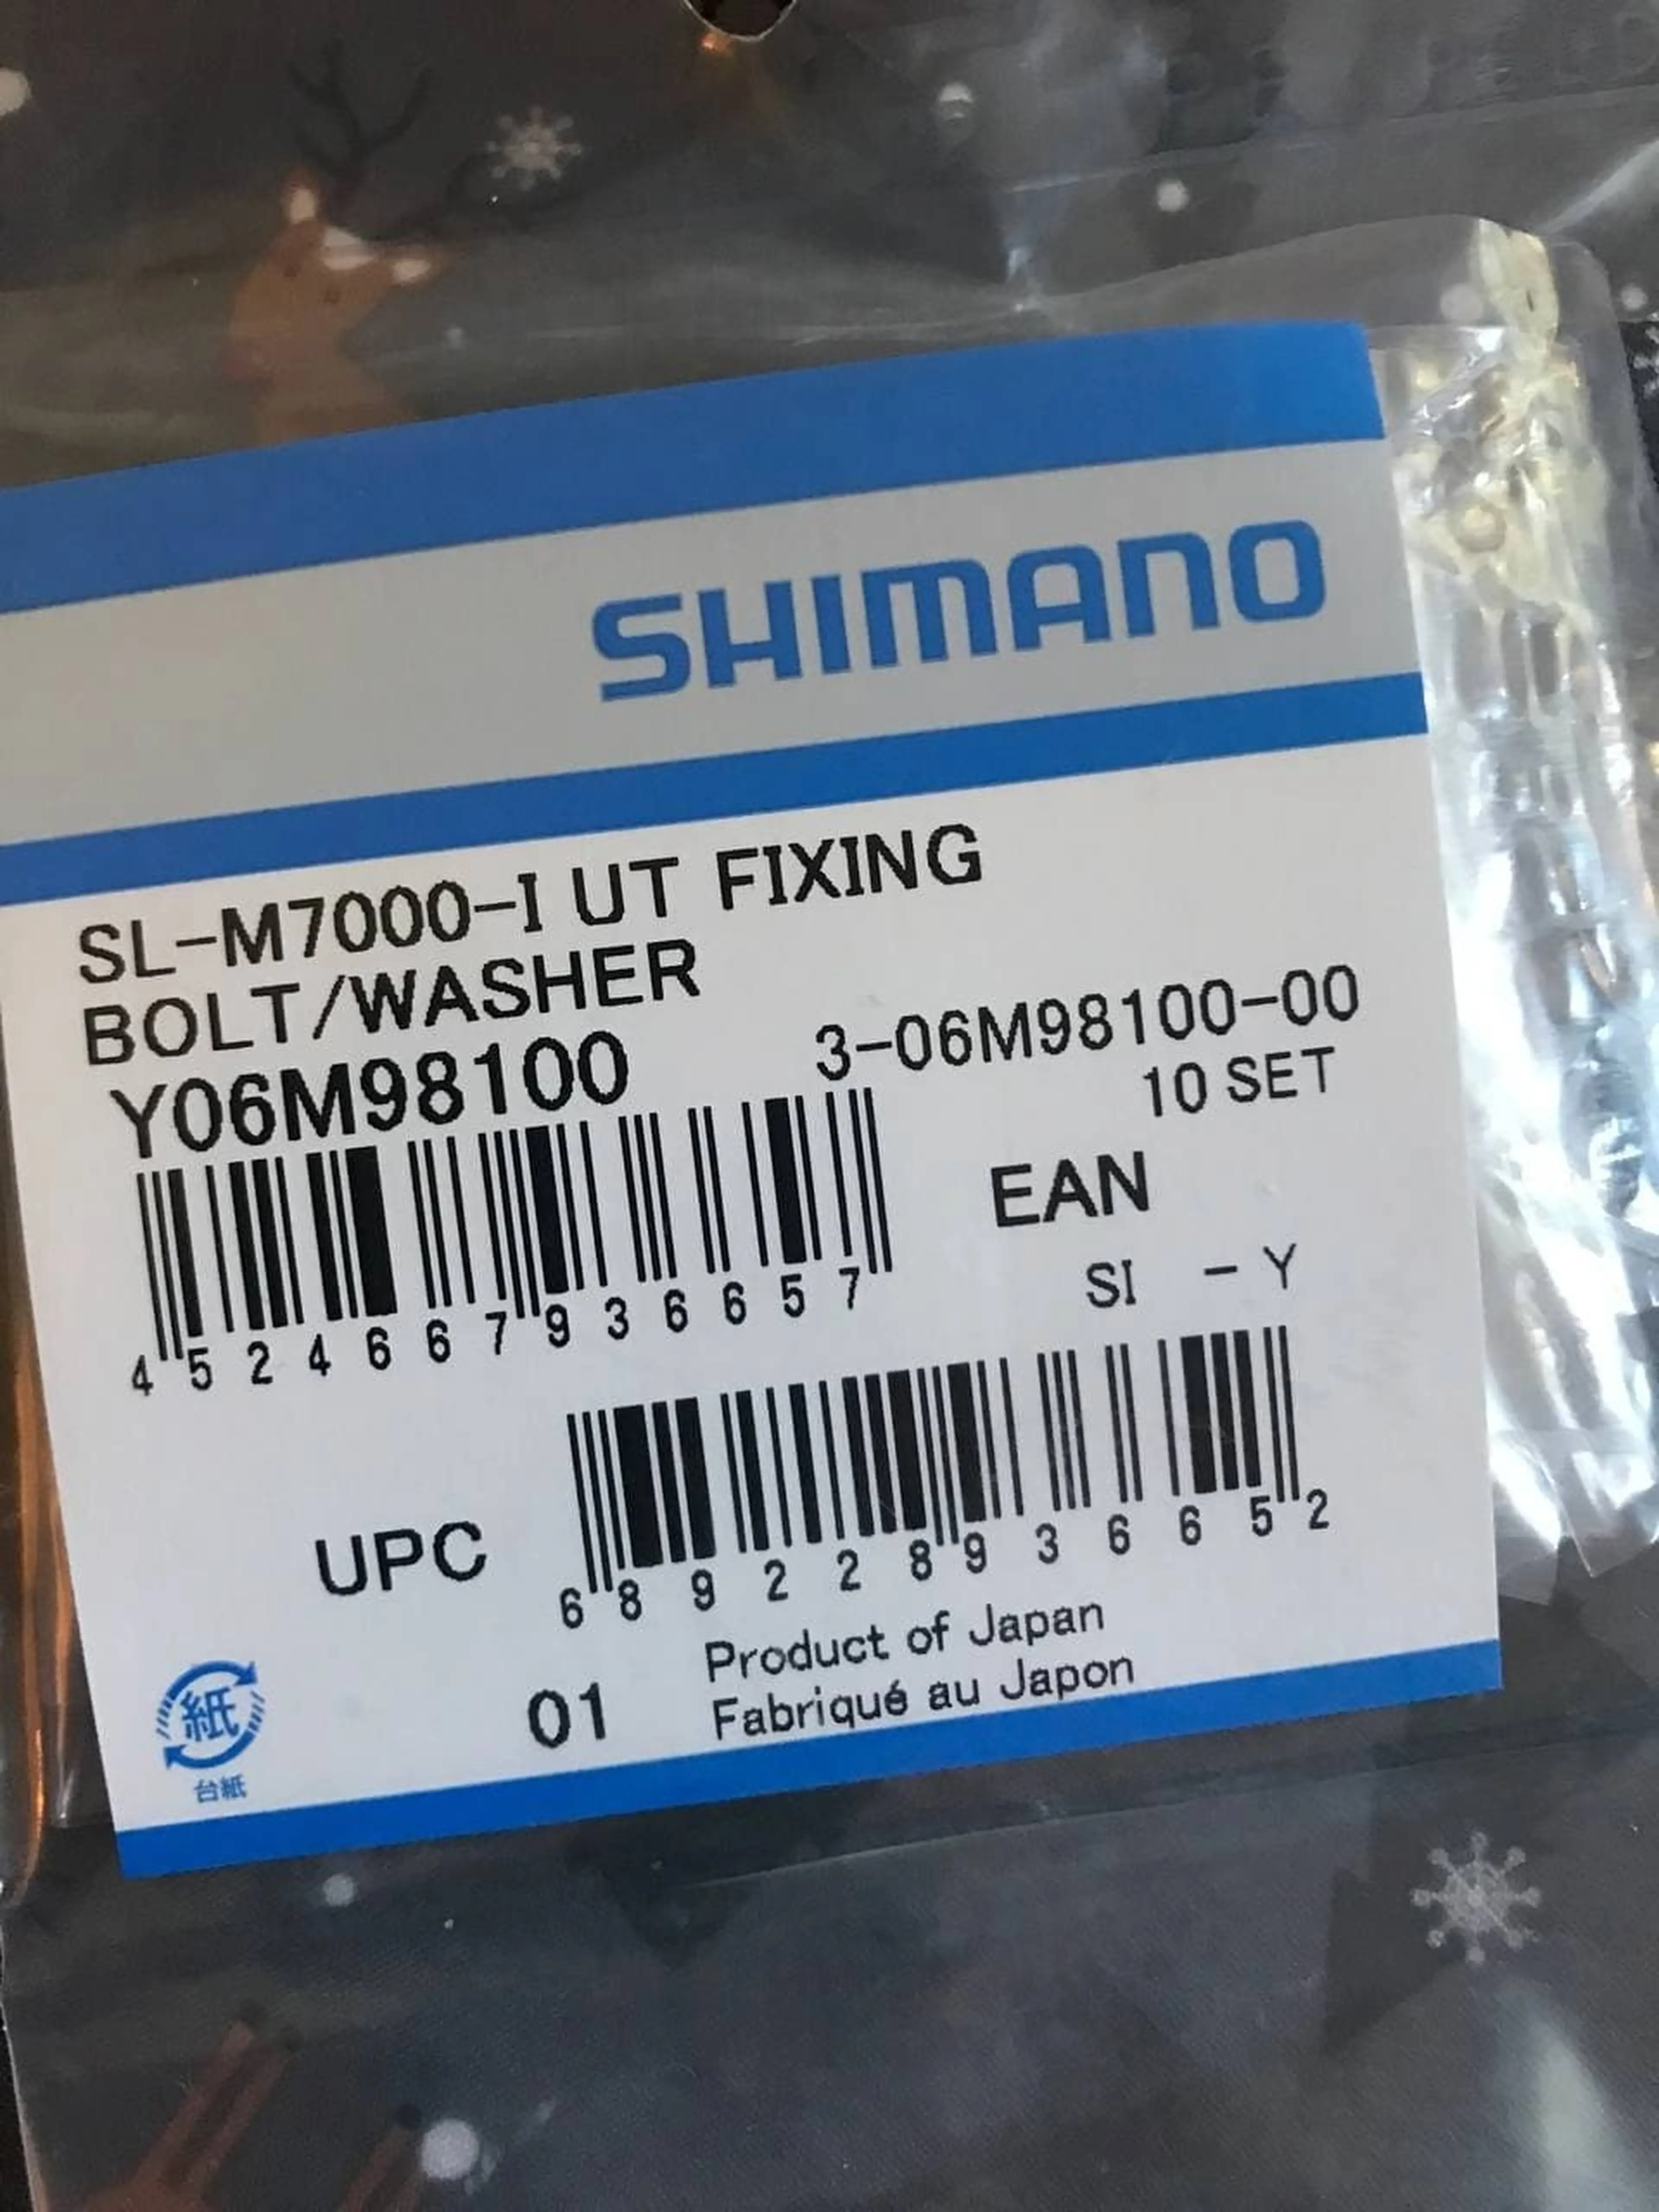 5. Shimano SLX prindere surub cu saiba cod Y06M98100